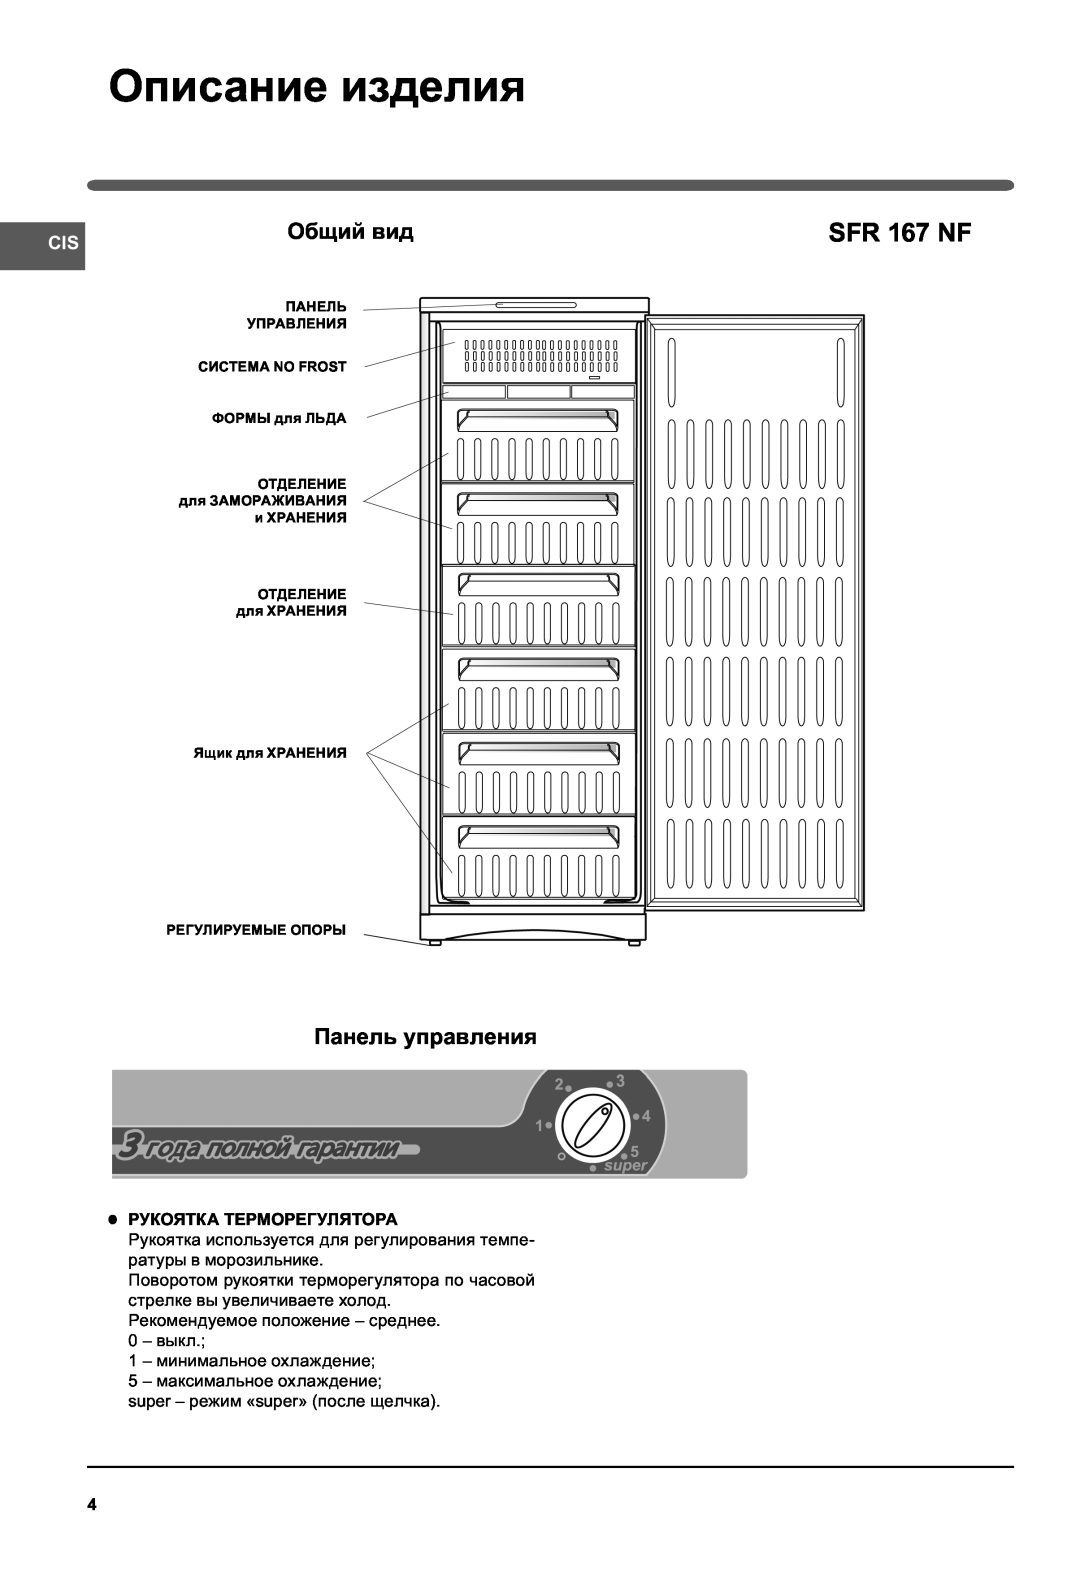 Indesit SFR 167NF manual Описание изделия, SFR 167 NF, Общий вид, Панель управления 